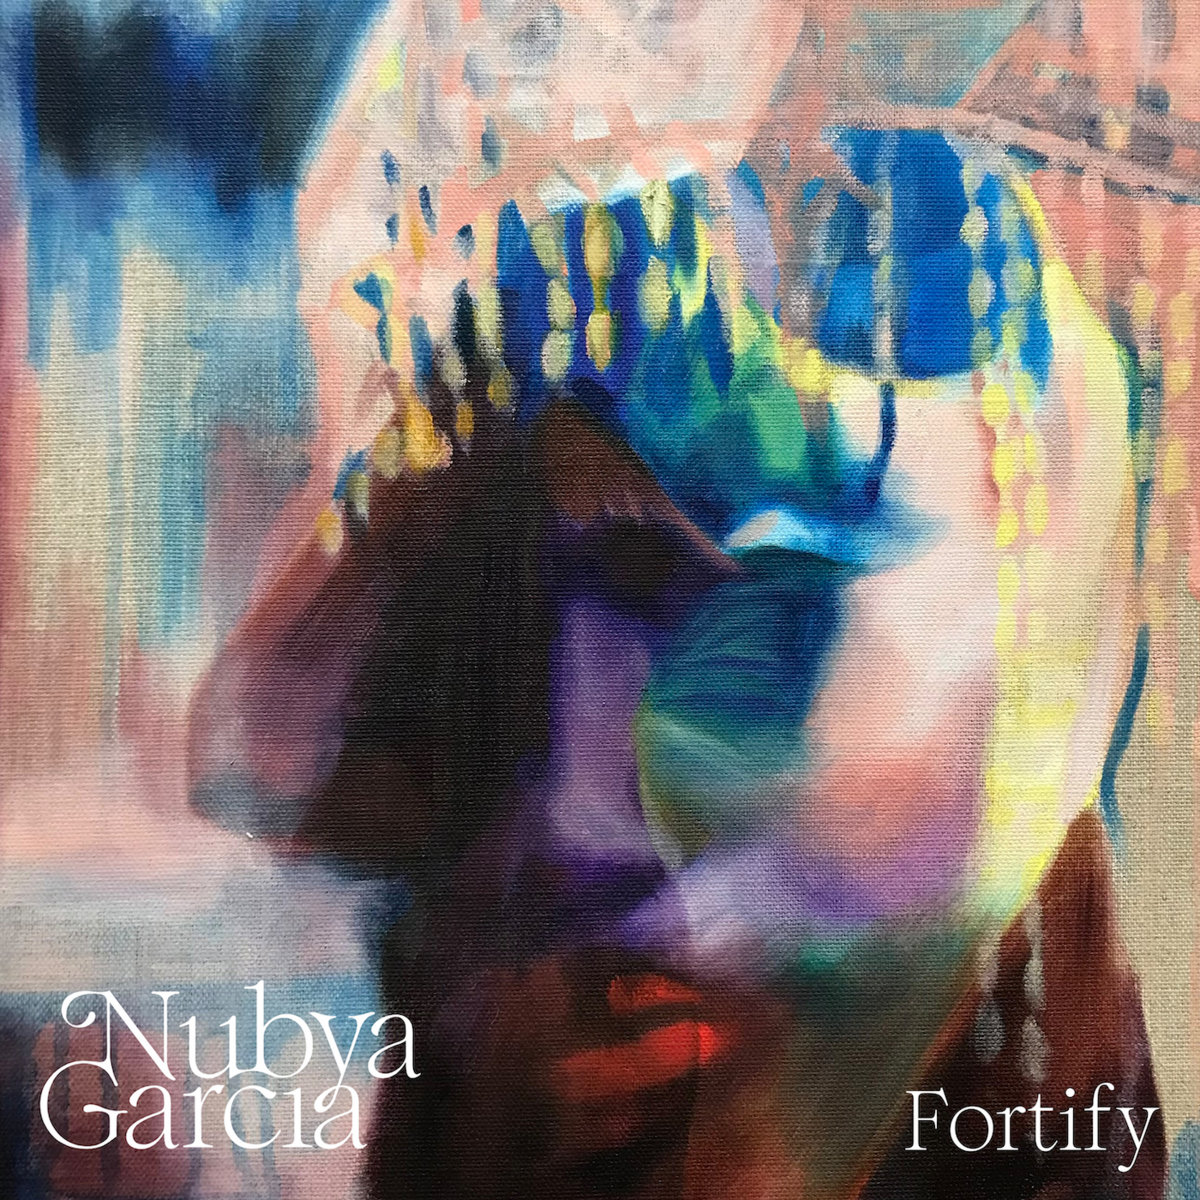 Nubya Garcia “Fortify” single artwork, by Annis Harrison